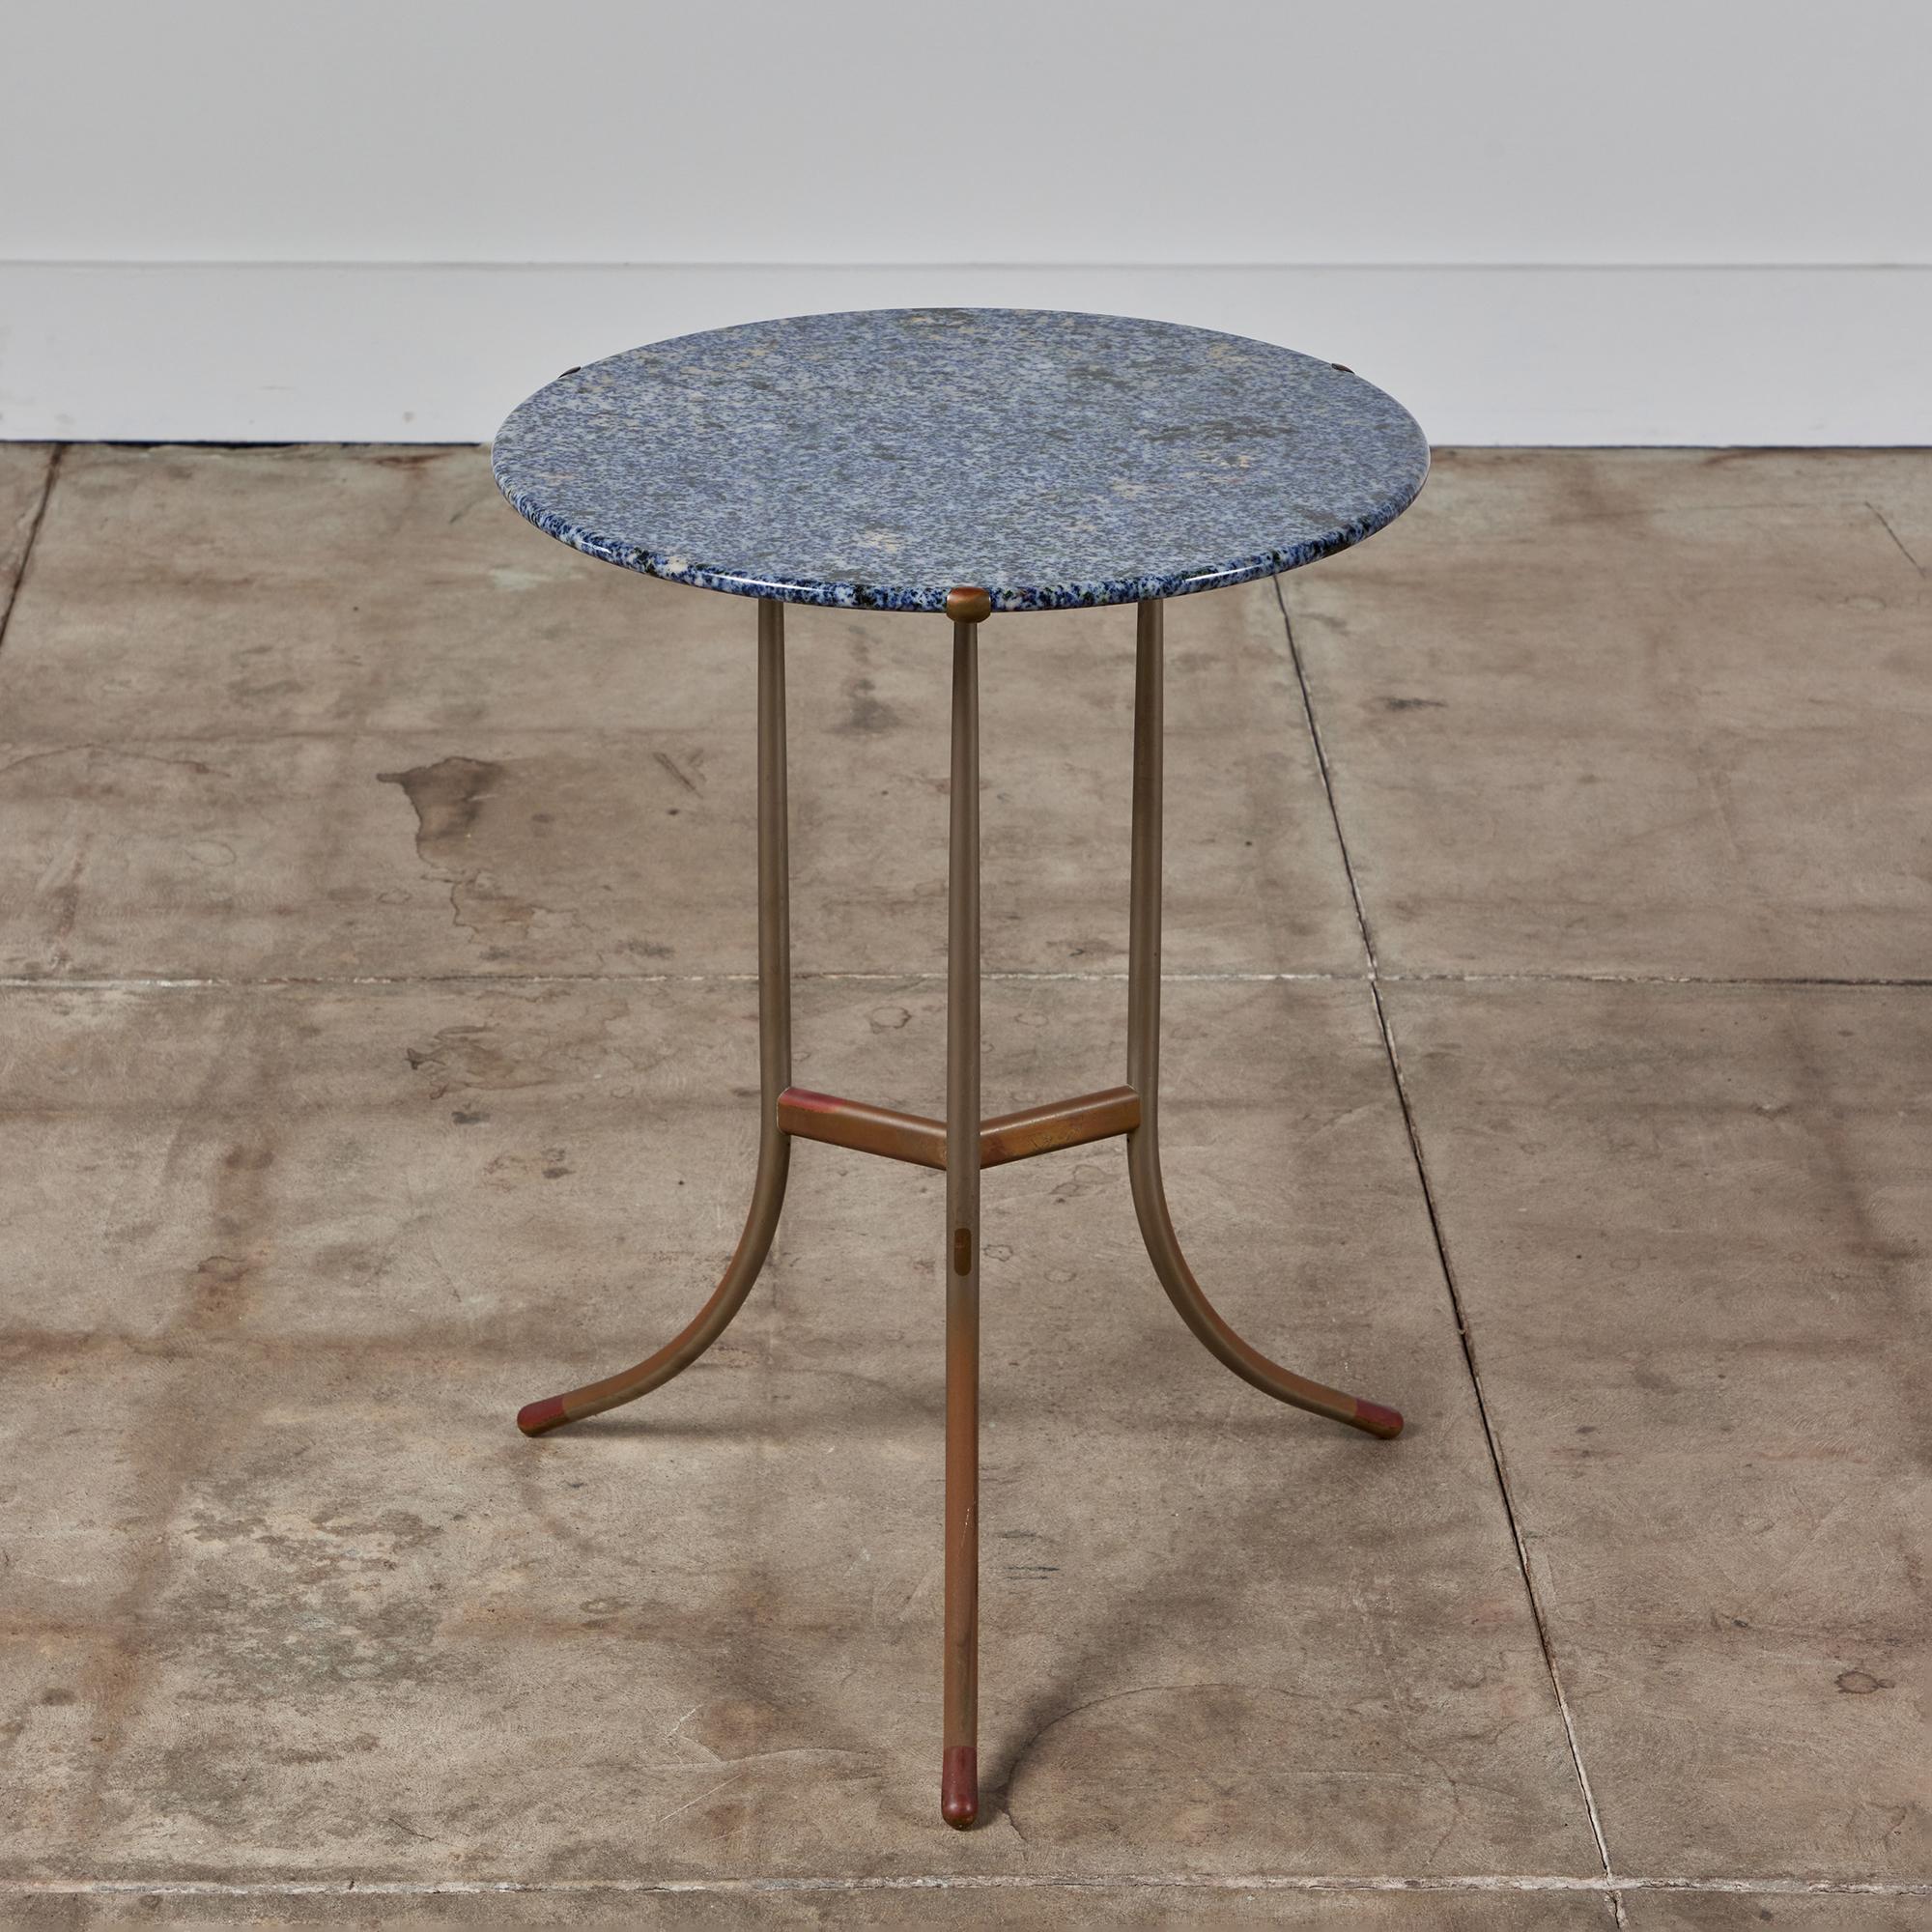 Table d'appoint Cedric Hartman en métal mixte et granit, c.1970, États-Unis. Le plateau de la table ronde en granit bleu présente un veinage crème et noir. Le plateau de la table repose sur trois délicates pinces en cuivre. La table se caractérise